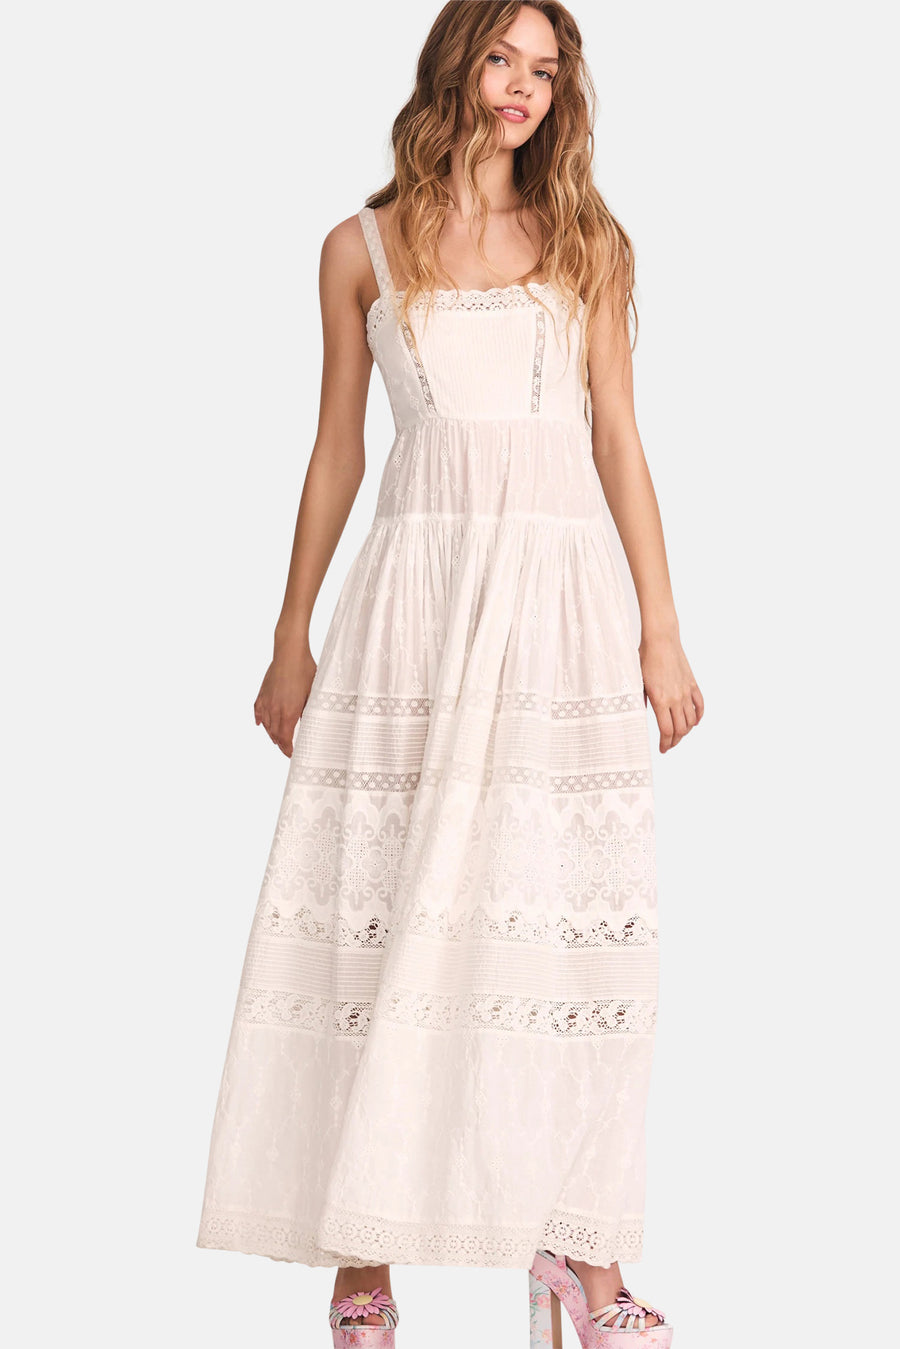 Camisha Dress True White - blueandcream